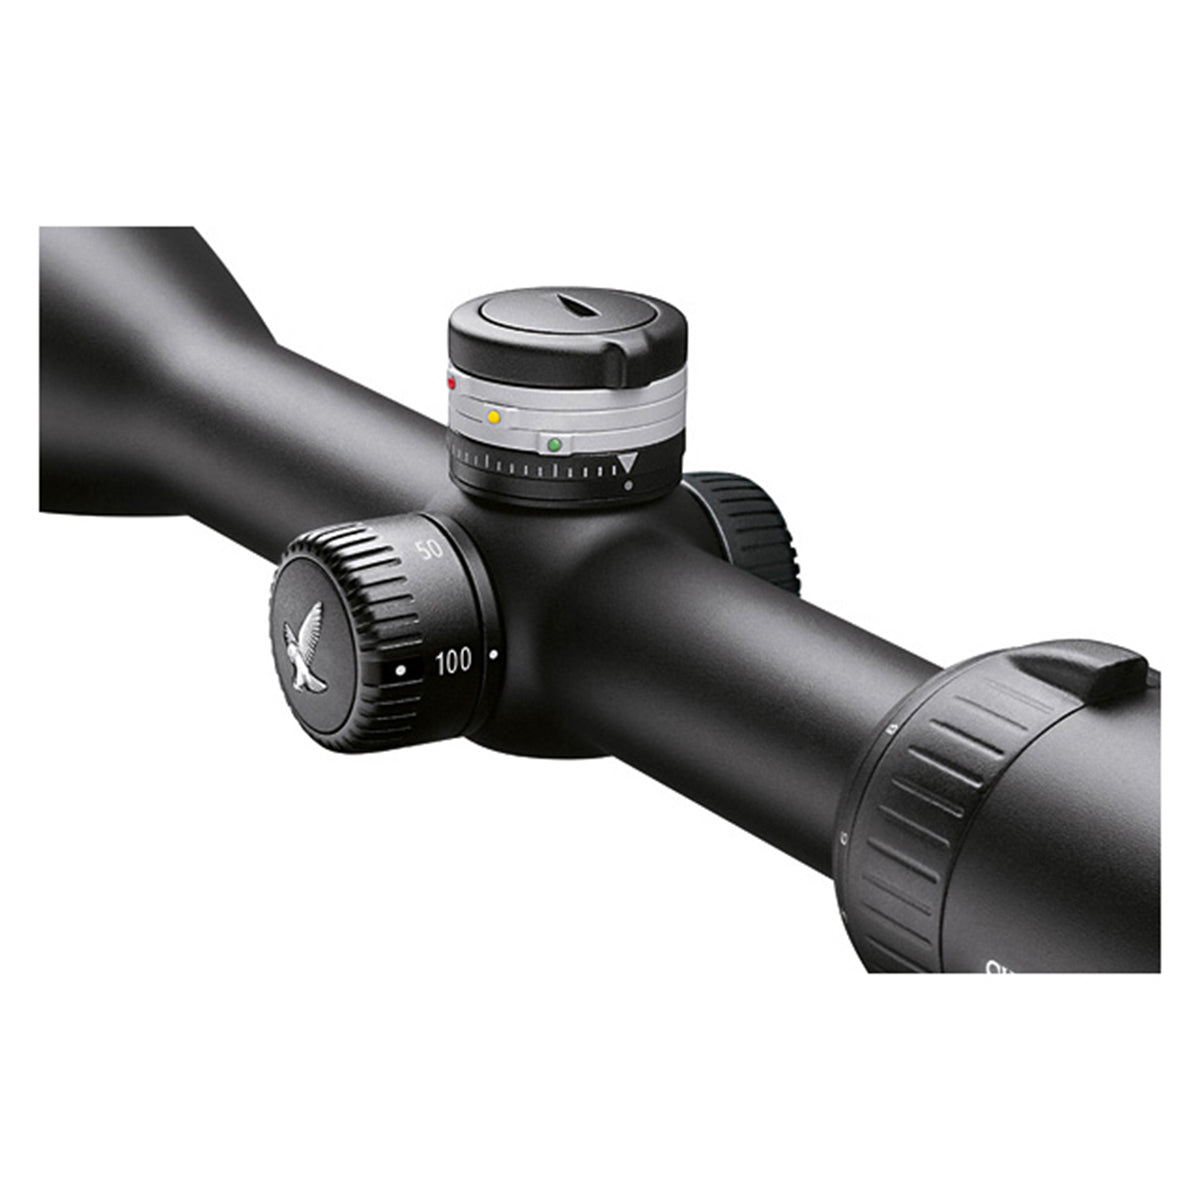 Swarovski Z5 3.5-18x44 L BT Riflescope in Swarovski Z5 3.5-18x44 L BT Riflescope by Swarovski Optik | Optics - goHUNT Shop by GOHUNT | Swarovski Optik - GOHUNT Shop